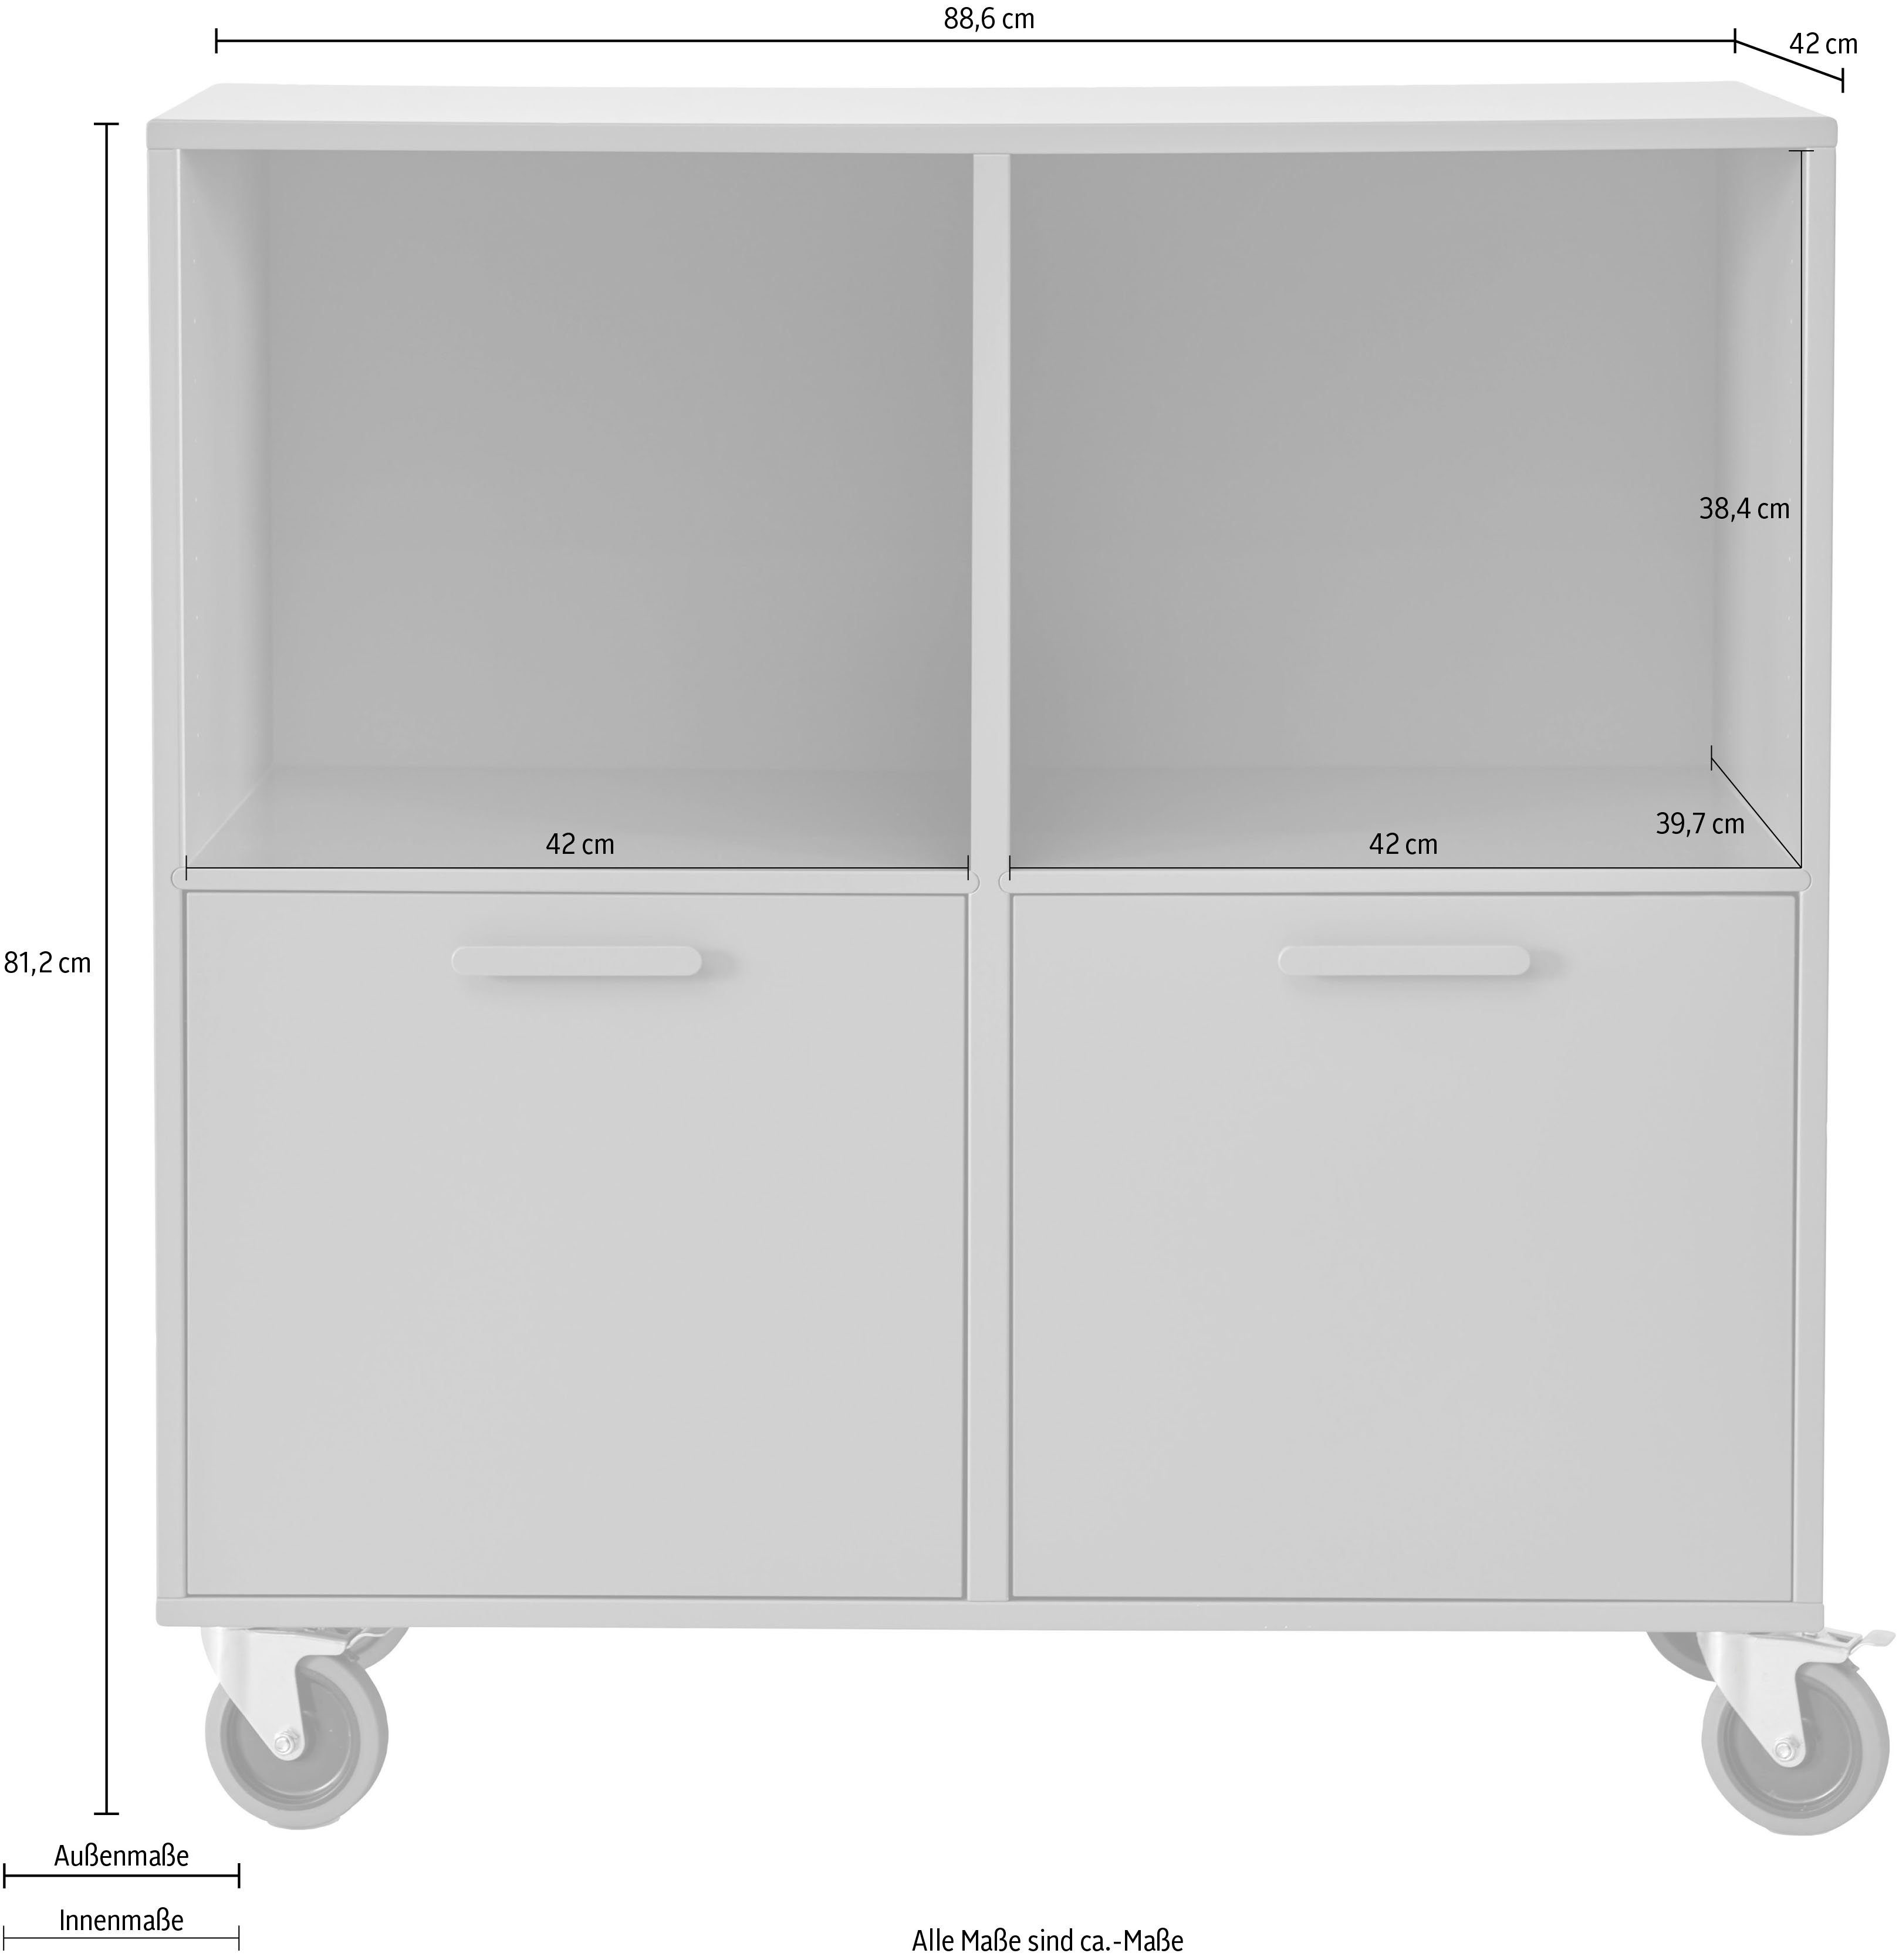 Hammel Furniture Regal Keep by Rollen, 2 mit Terrakotta flexible und Möbelserie | Türen Terrakotta Breite cm, Hammel, 88,6